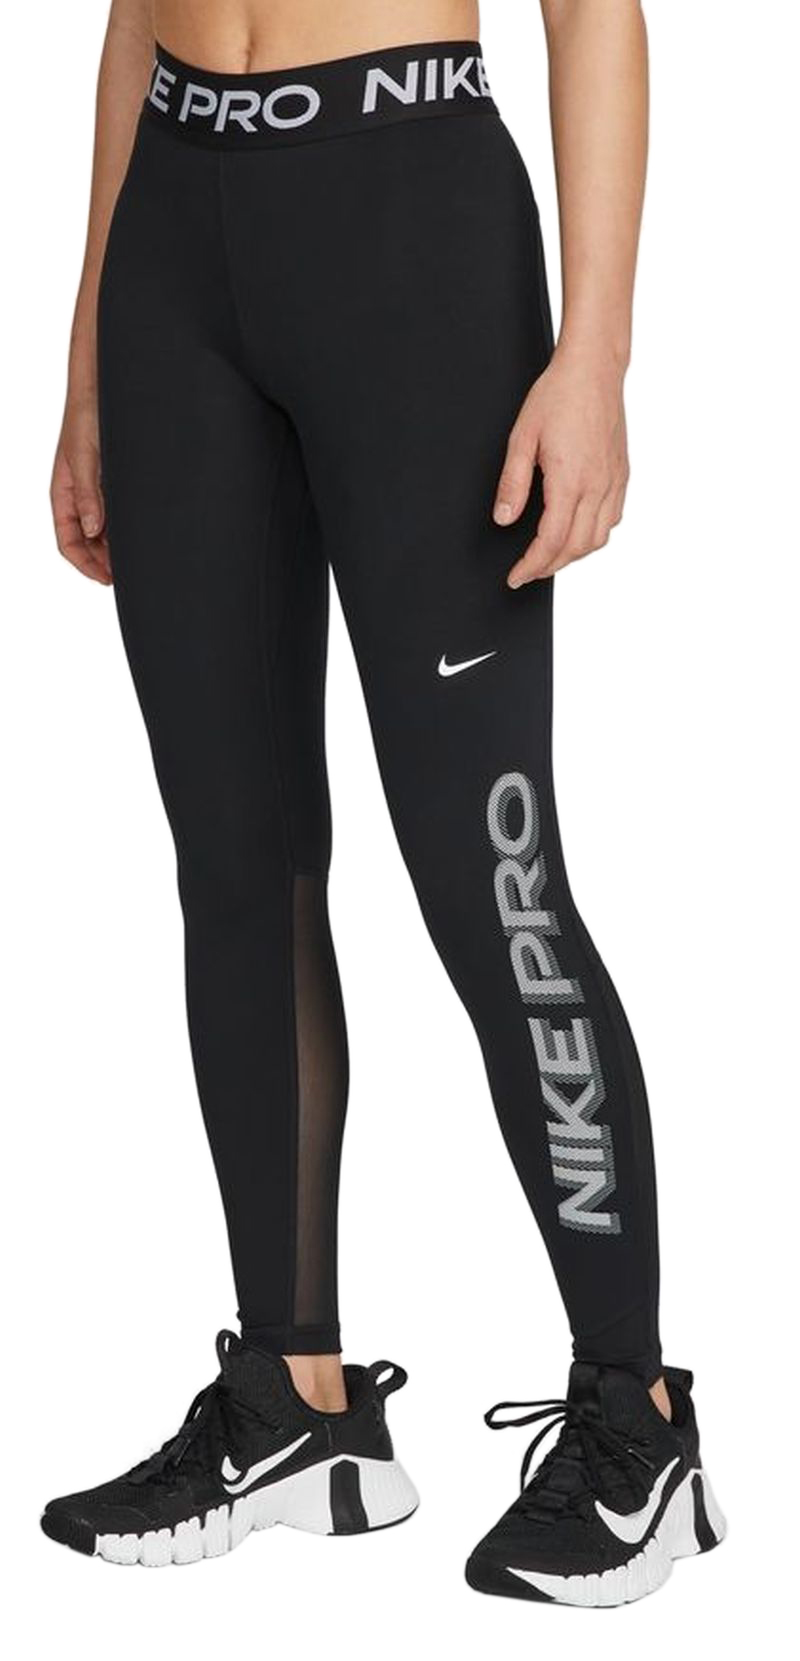 Women's leggings Nike Pro Dri-Fit Tight Hi Rise W - black/black/white, Tennis Zone